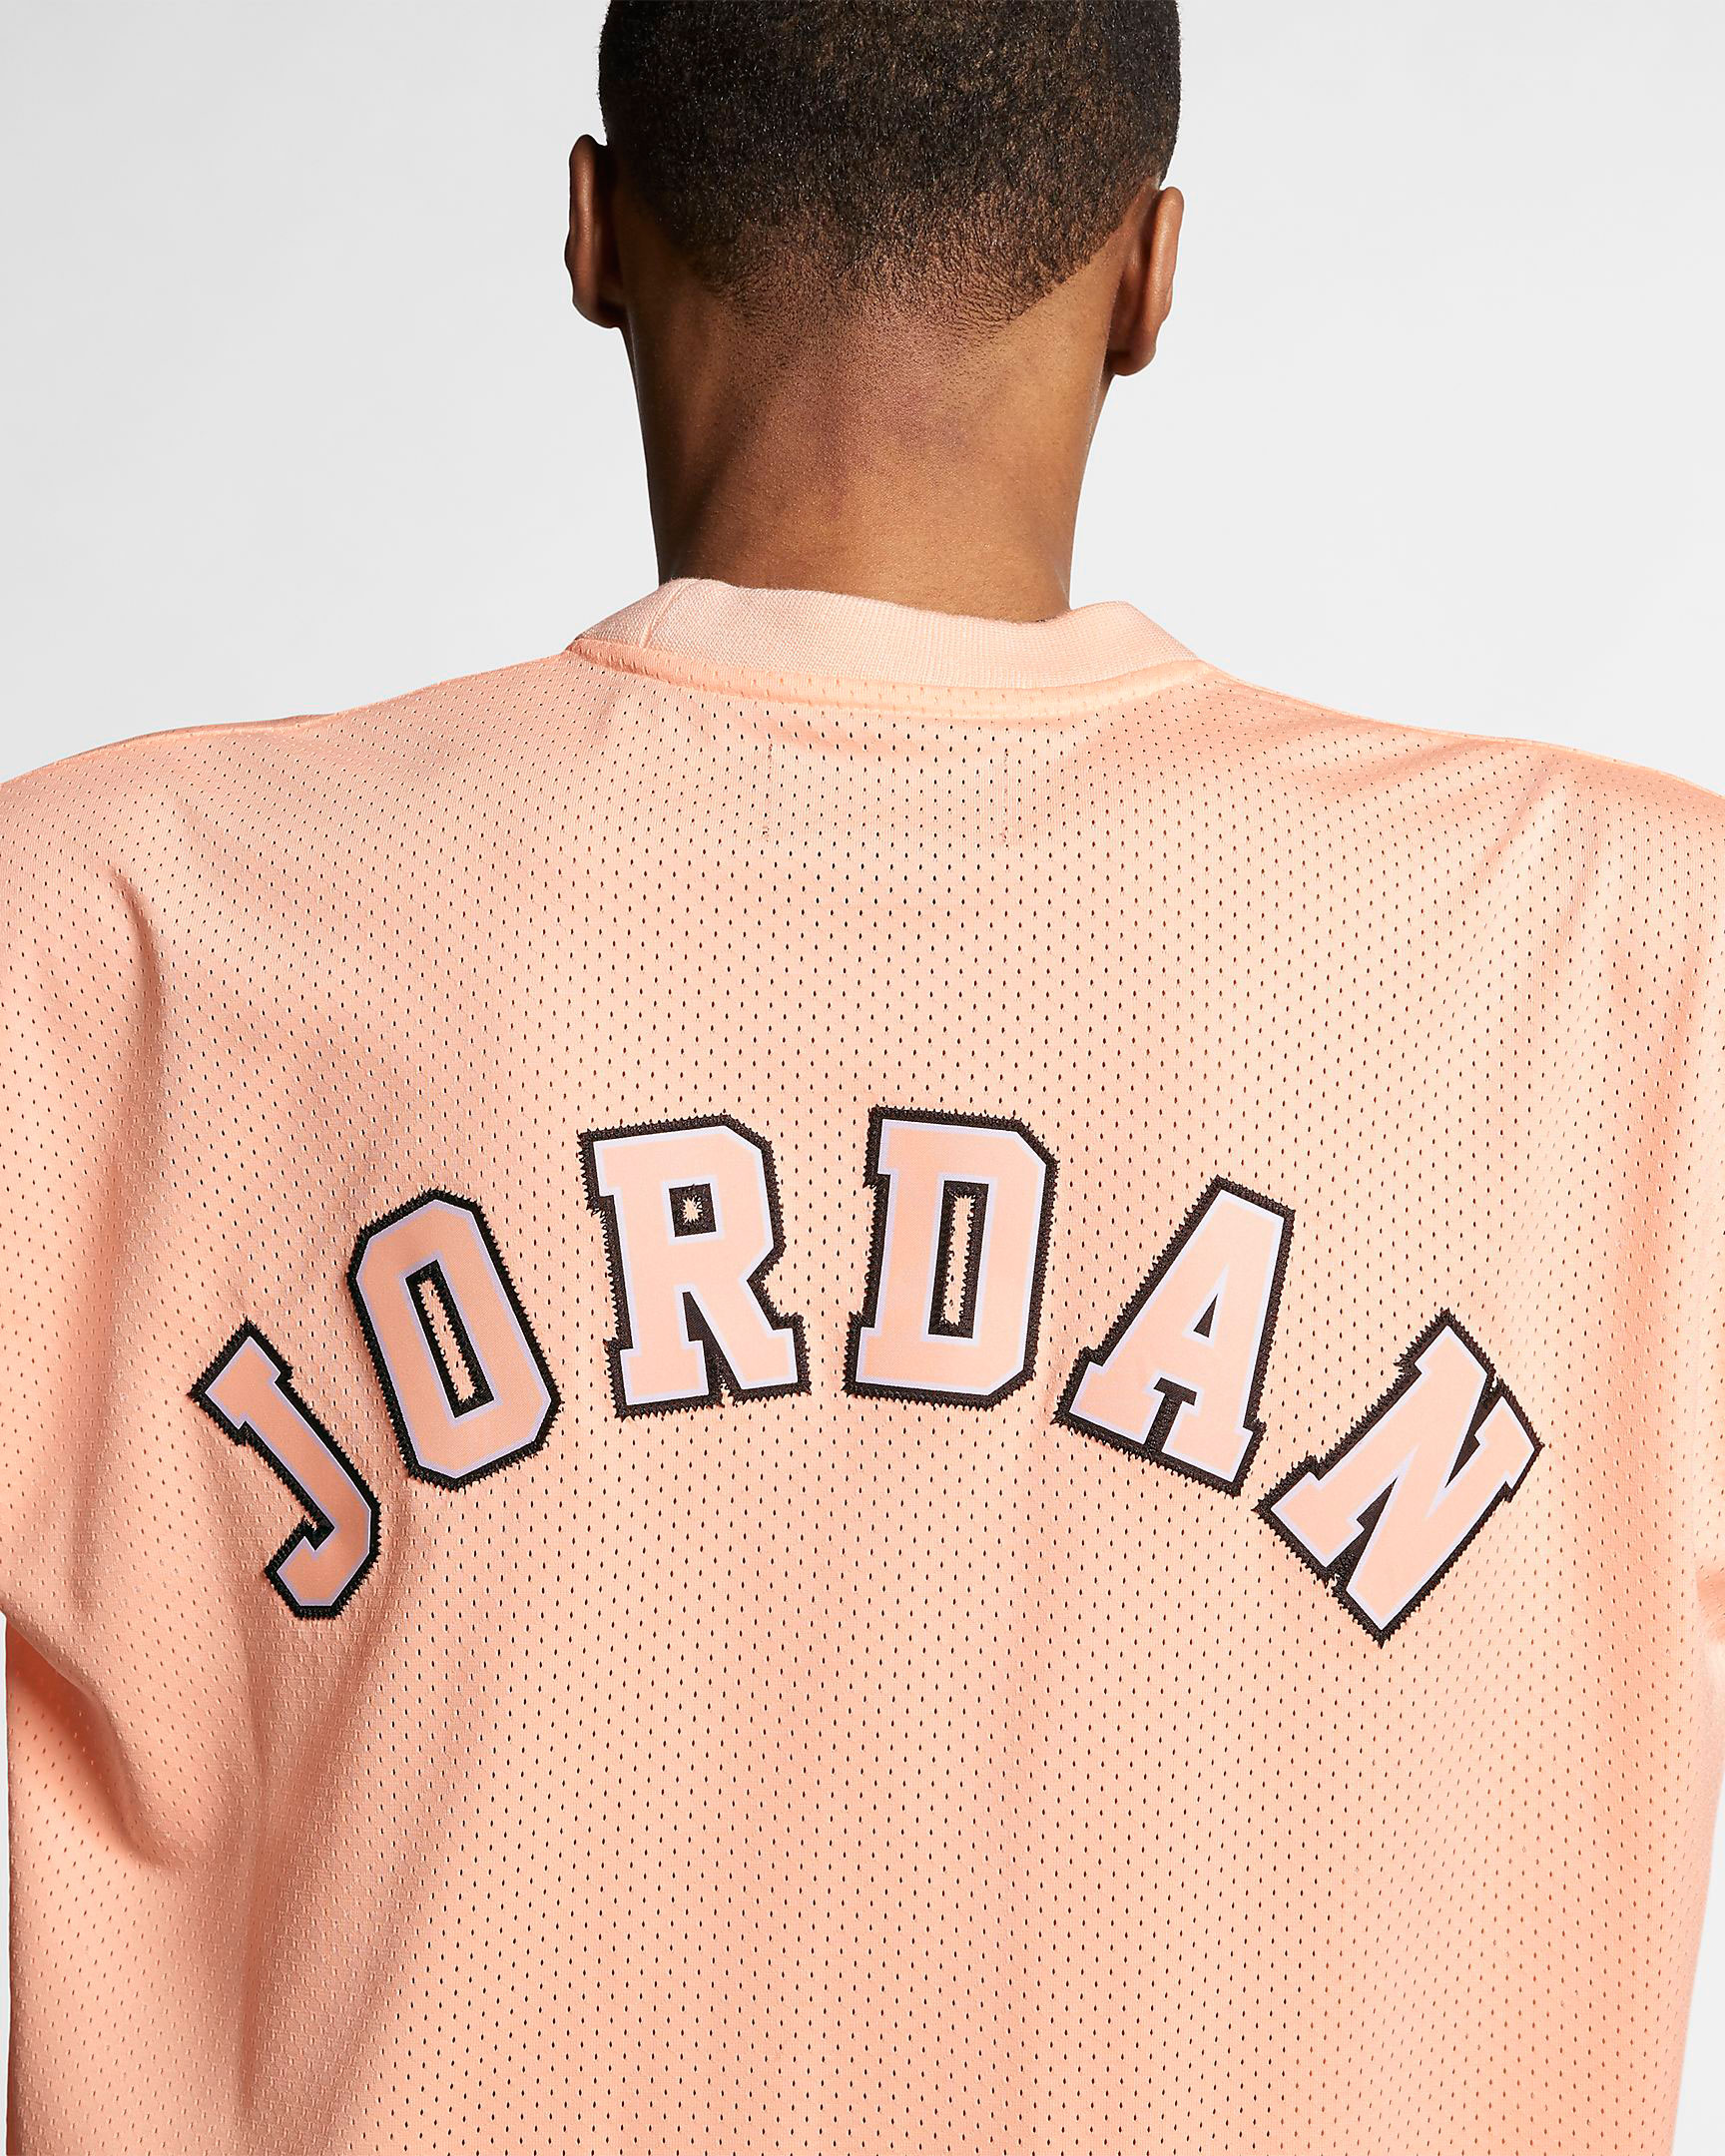 jordan-1-crimson-tint-jersey-shirt-5